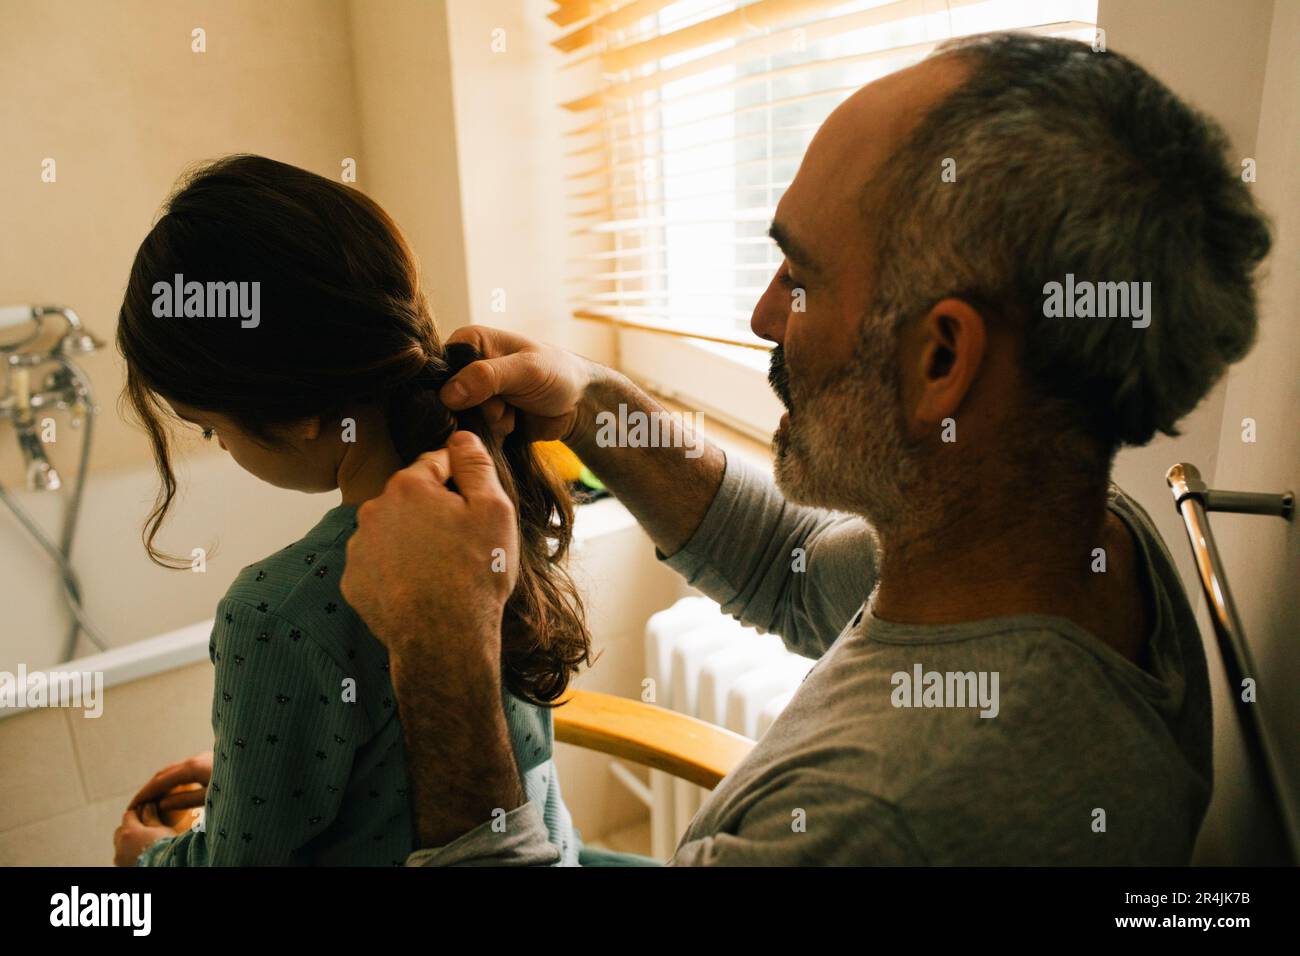 Le père tressait les cheveux de sa fille dans la salle de bains Banque D'Images